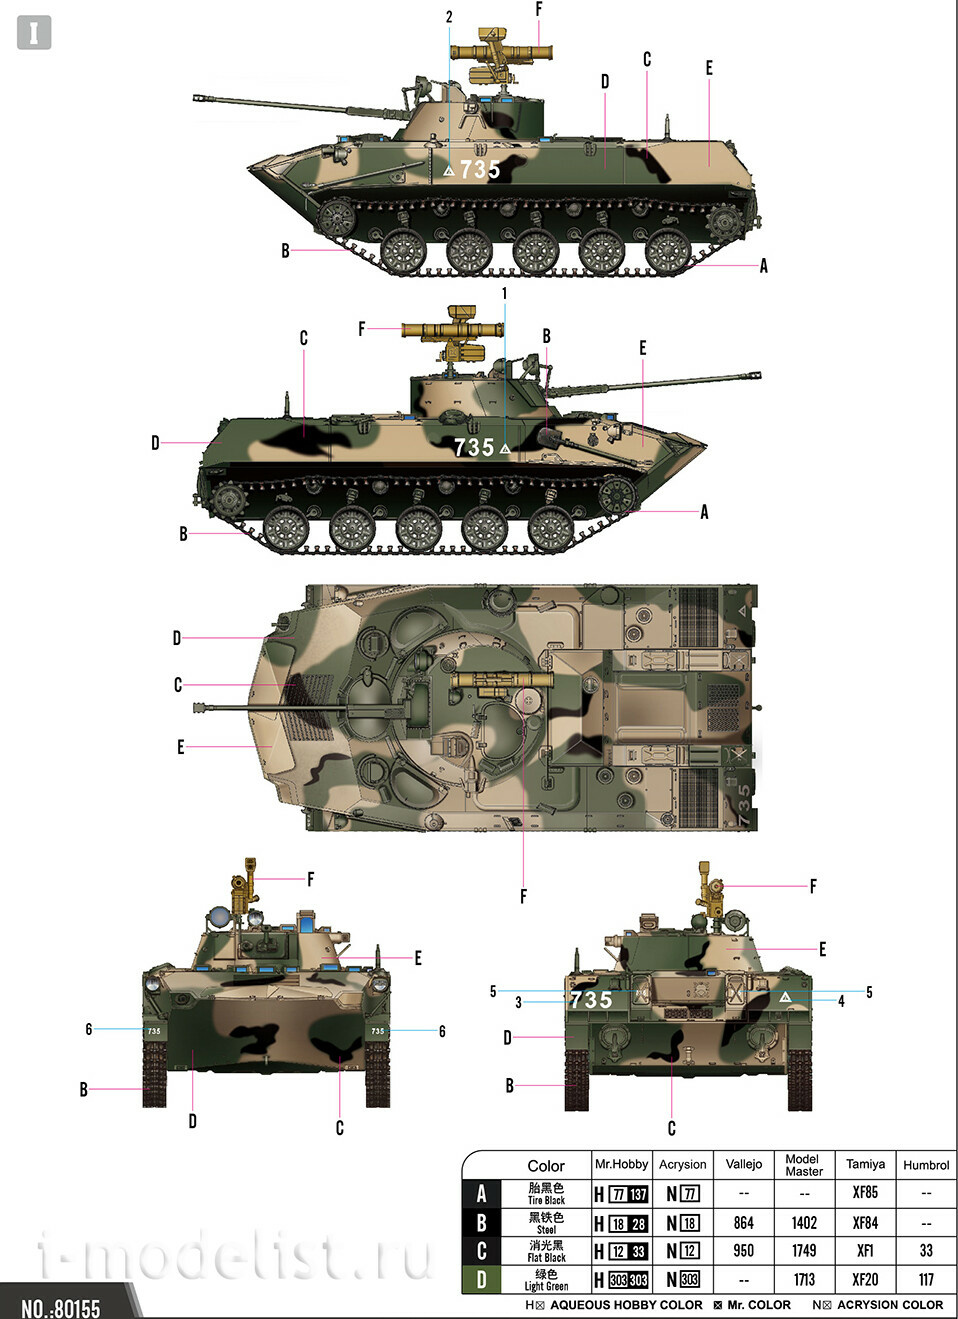 80155 HobbyBoss 1/35 Russian Amphibious Assault Vehicle 2 Series